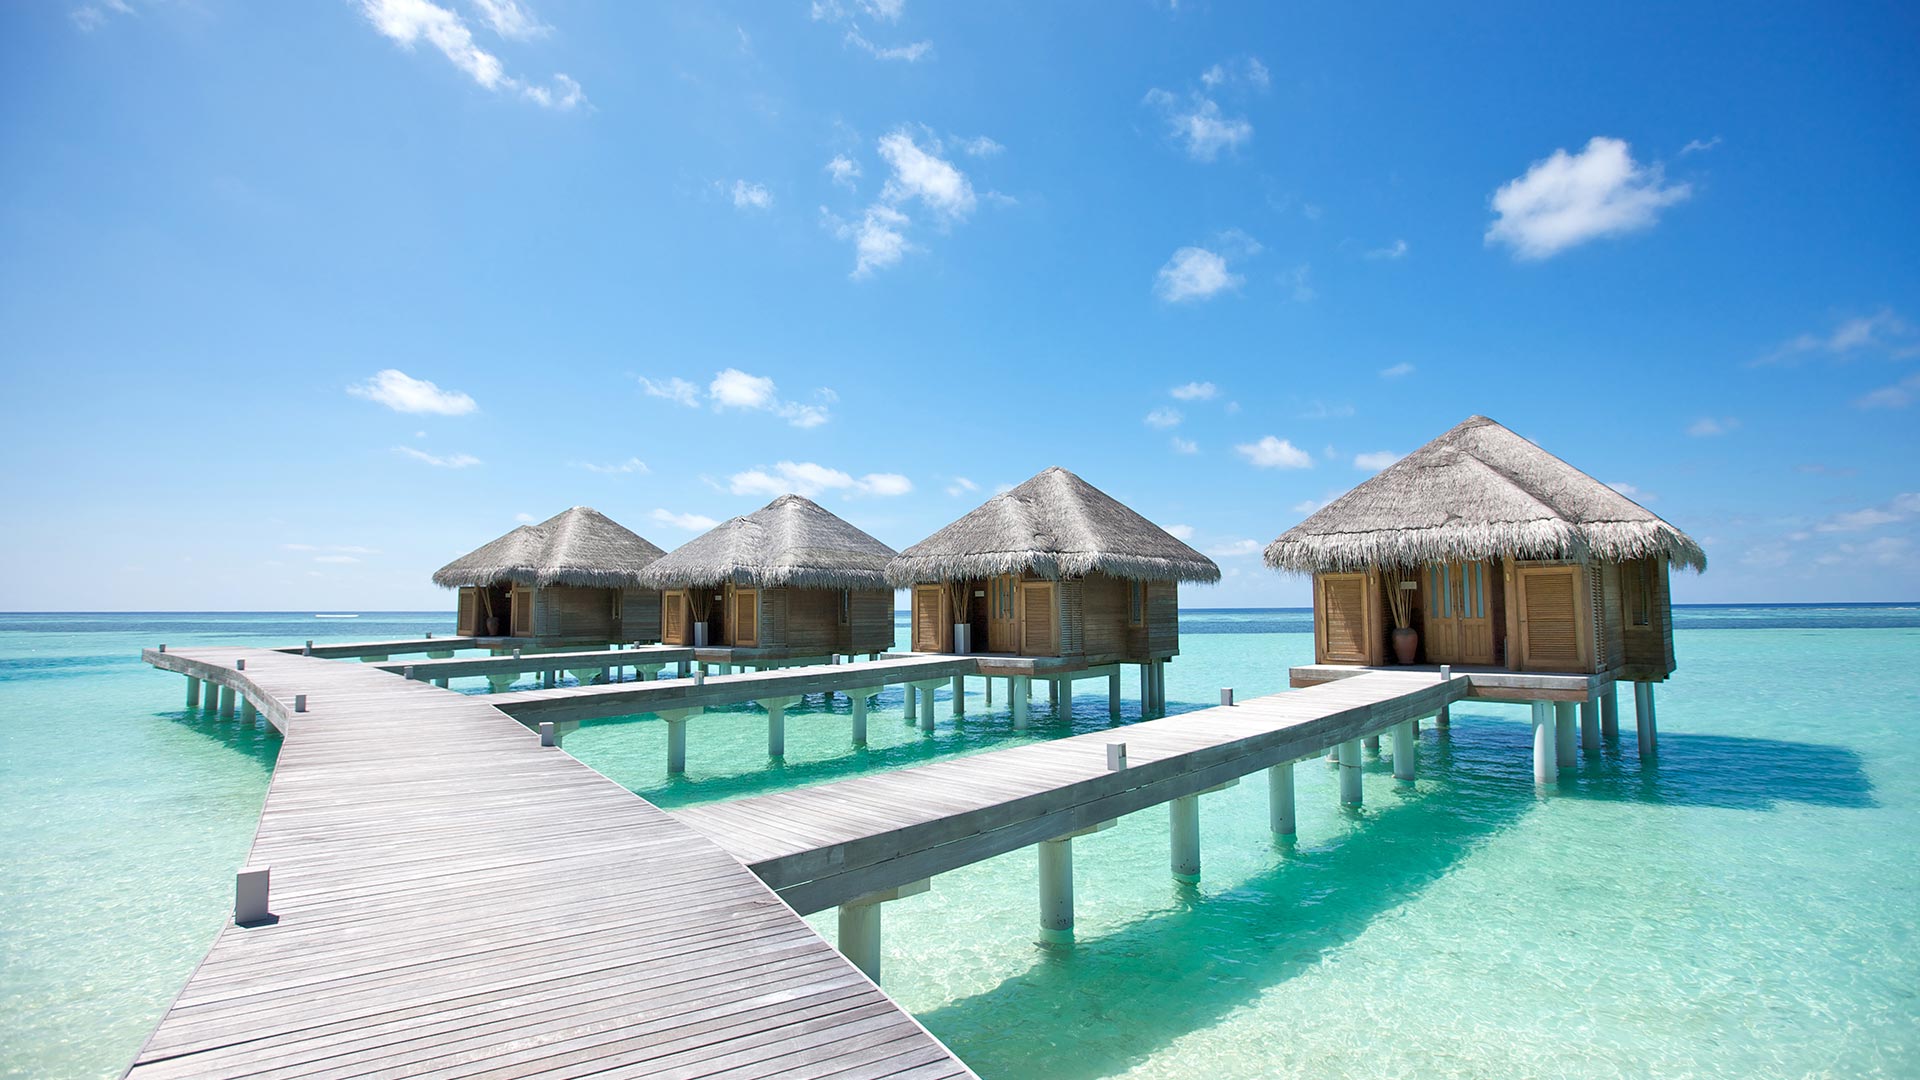 Beautiful Maldives!